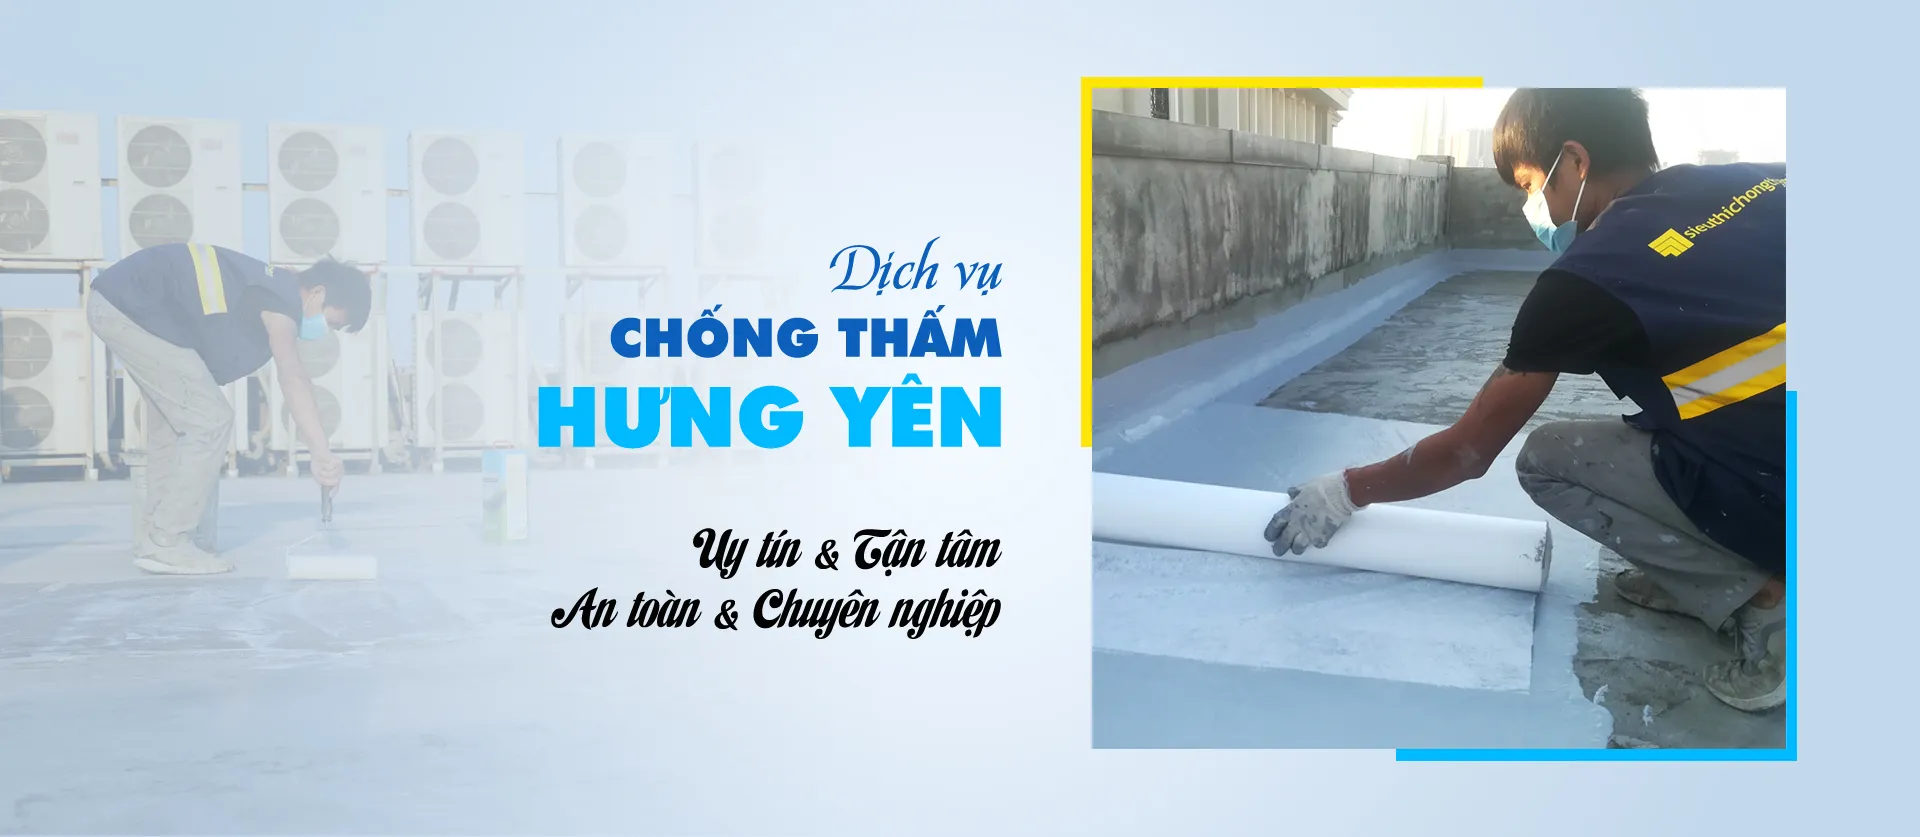 Hung Yen